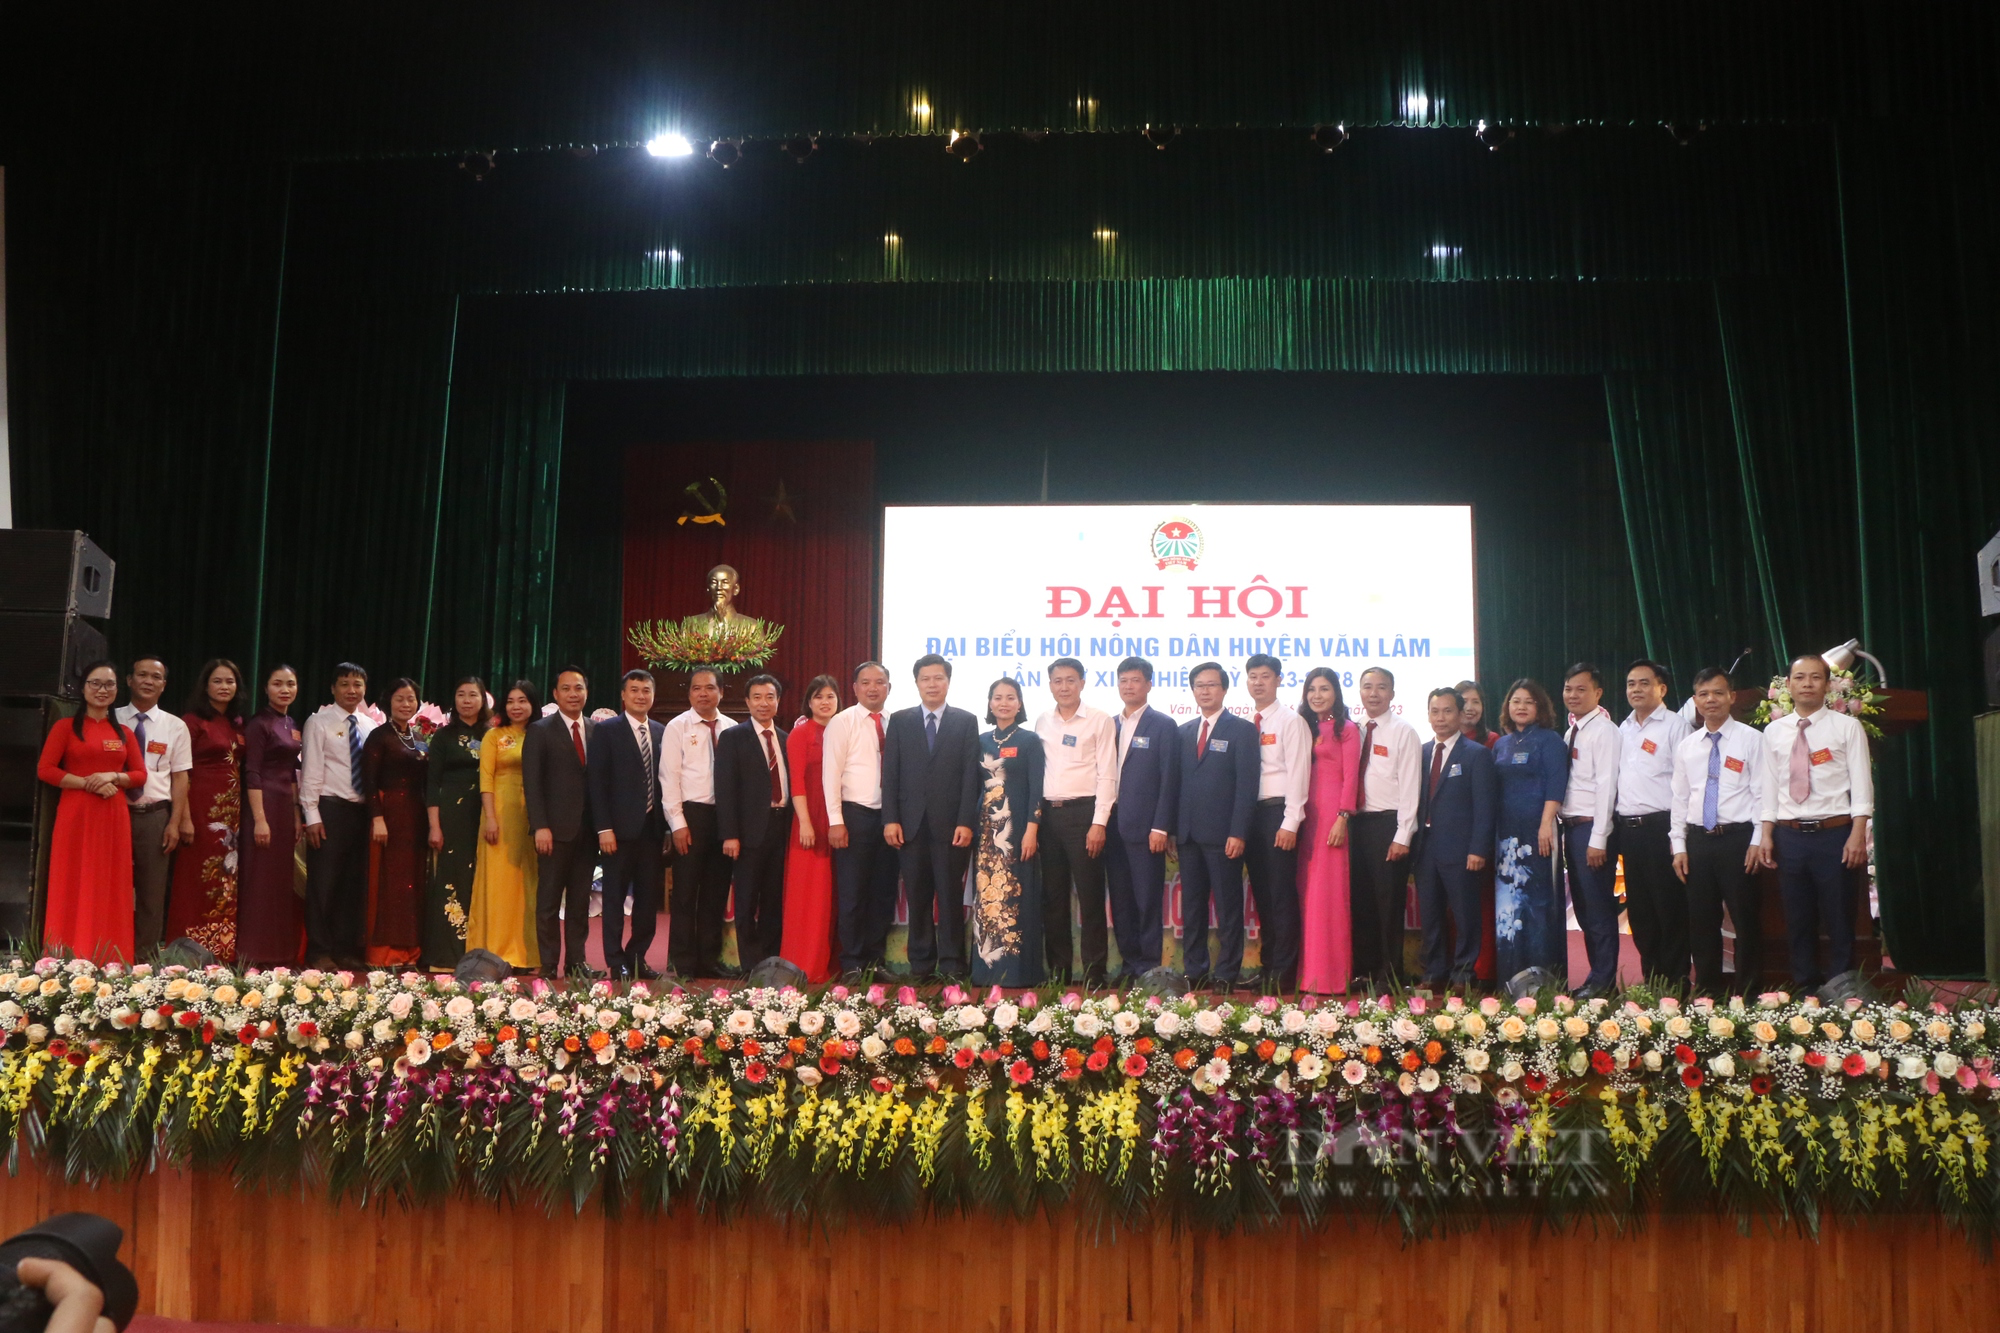 Hưng Yên: Đại hội Hội Nông dân huyện Văn Lâm bầu 18 đồng chí tham gia Ban Chấp hành - Ảnh 2.